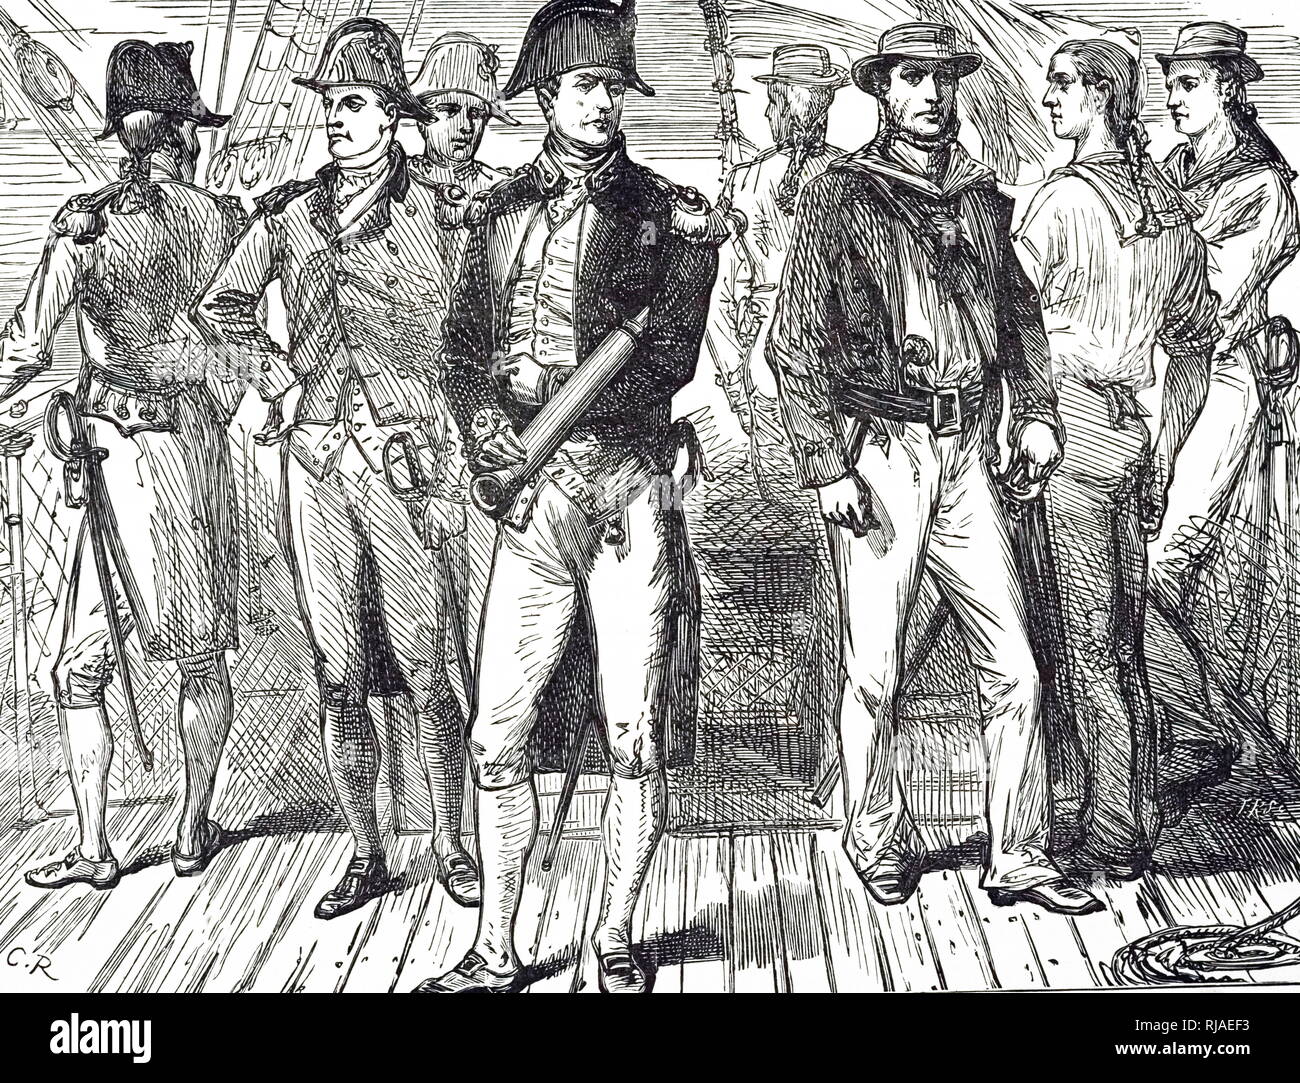 18e siècle et le capitaine de la Royal Navy à bord de leur navire. Illustration ; 1890 Banque D'Images